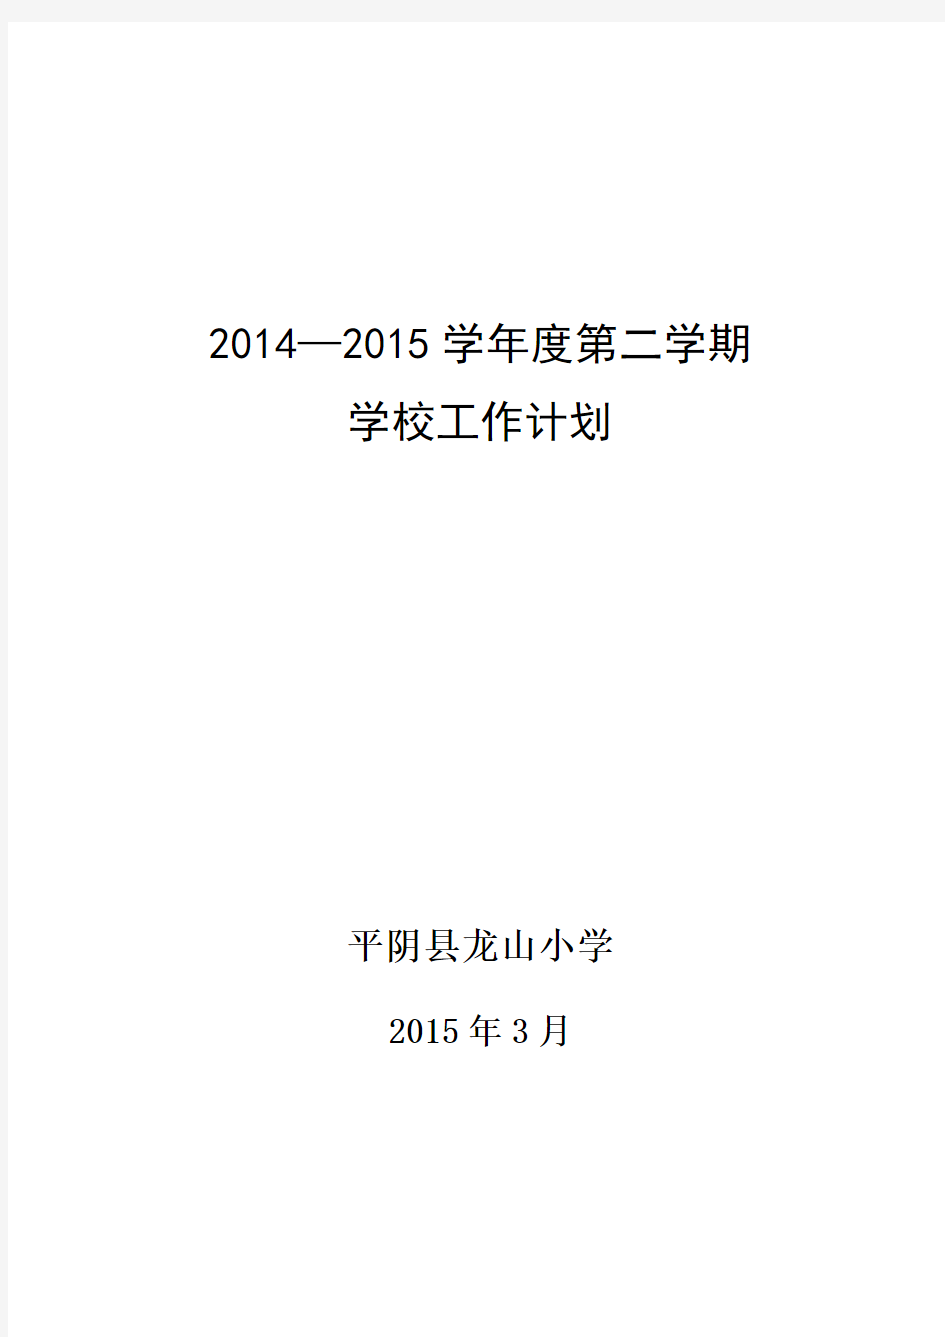 2014-2015学年第二学期工作计划